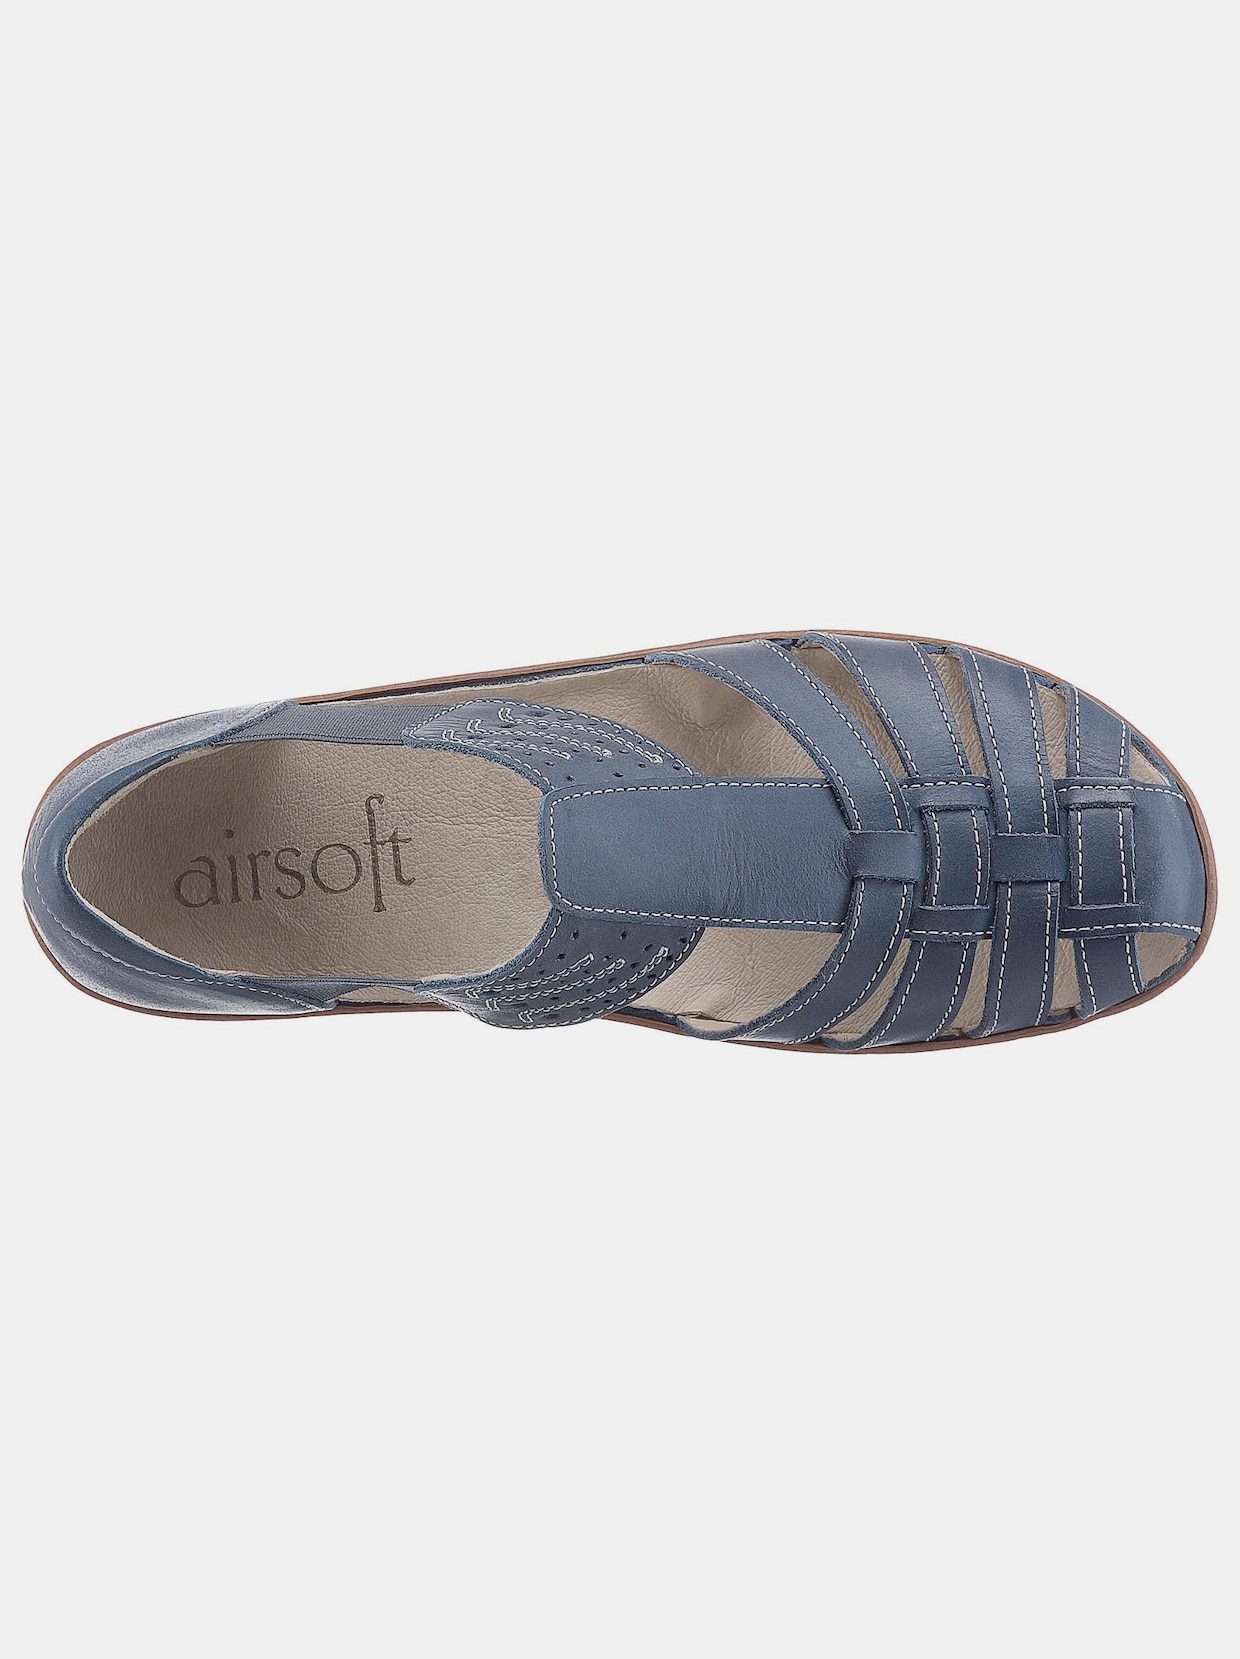 Airsoft Slipper - jeansblau